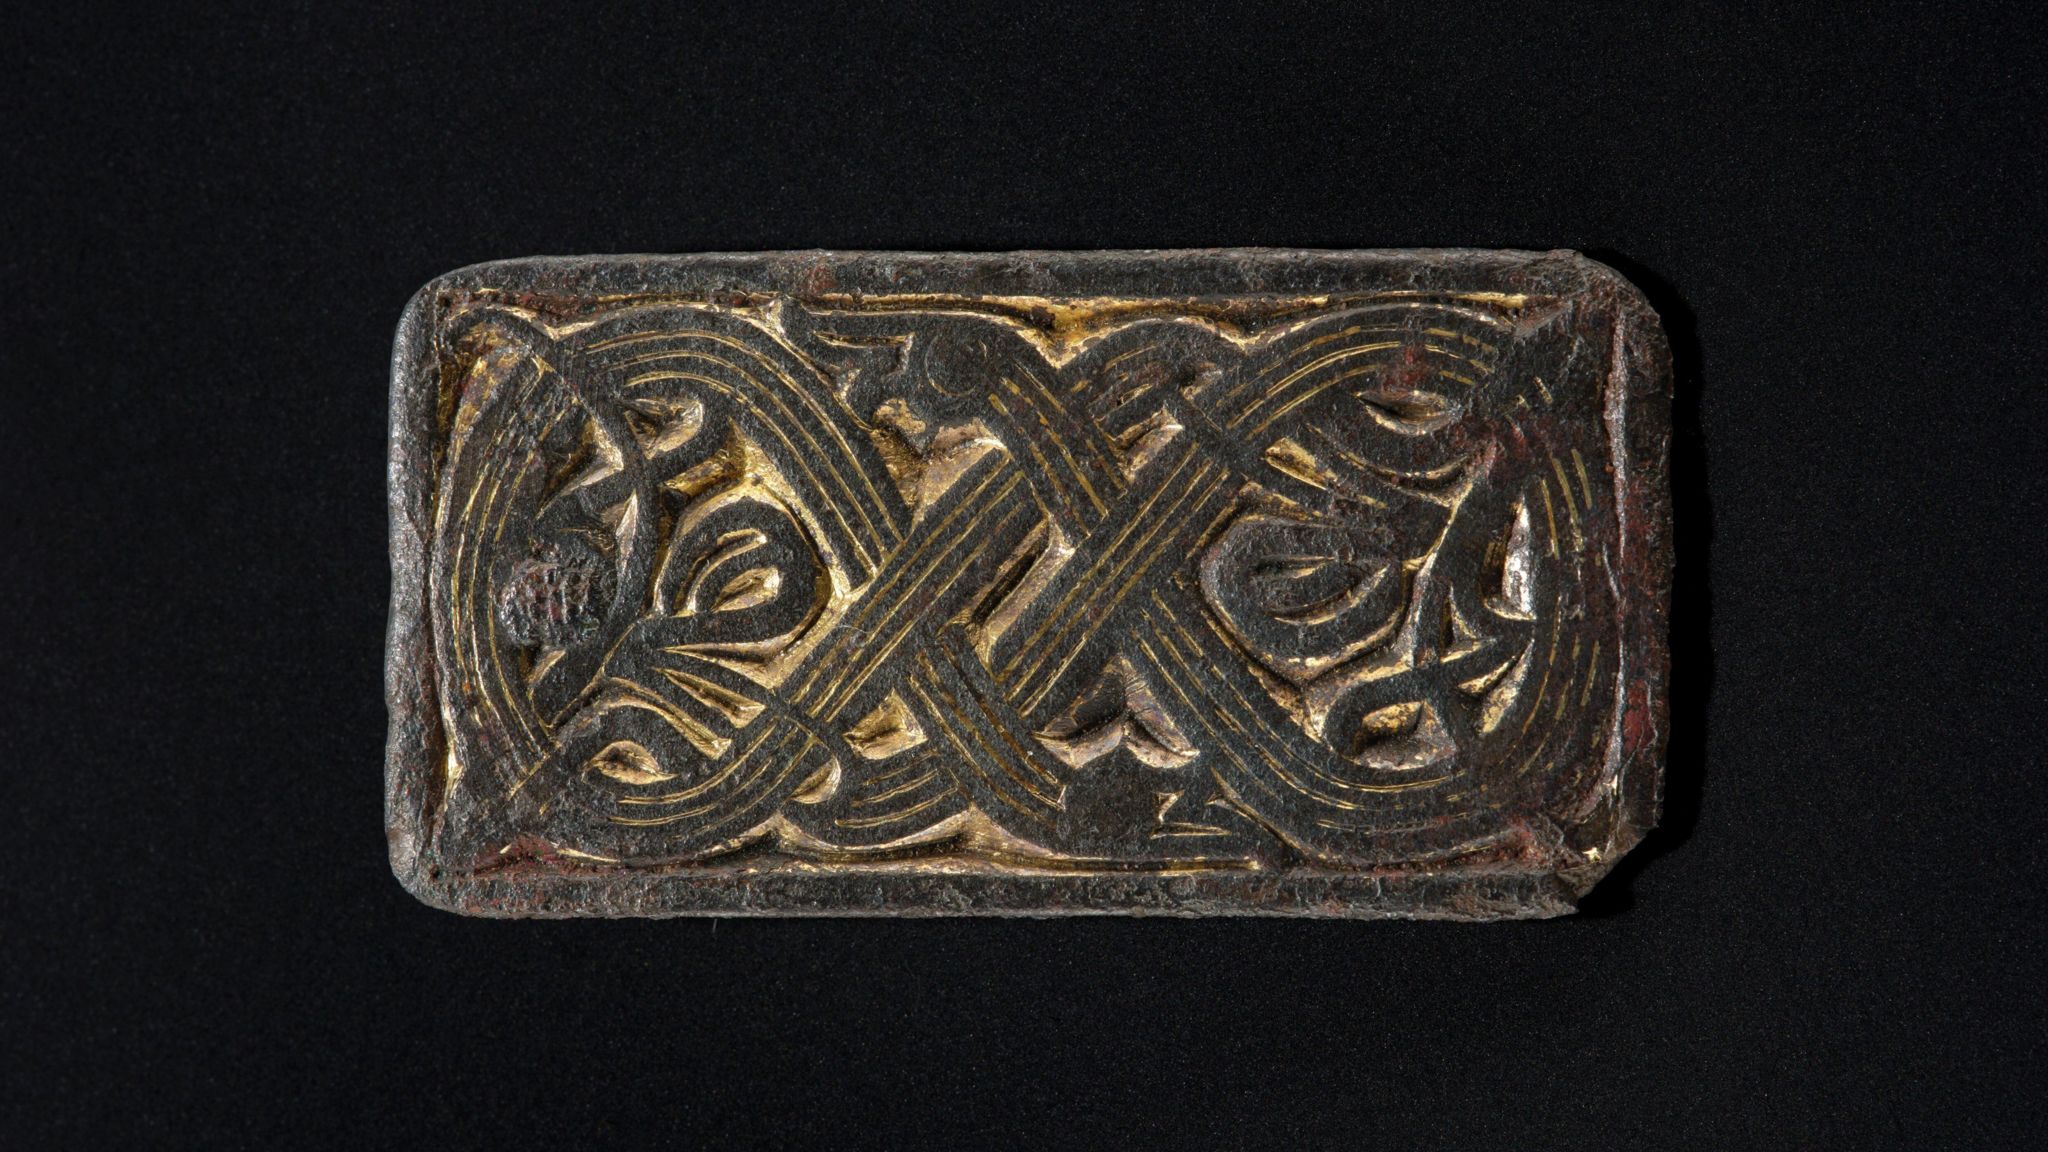 The Scandinavian cast gilded bronze mount